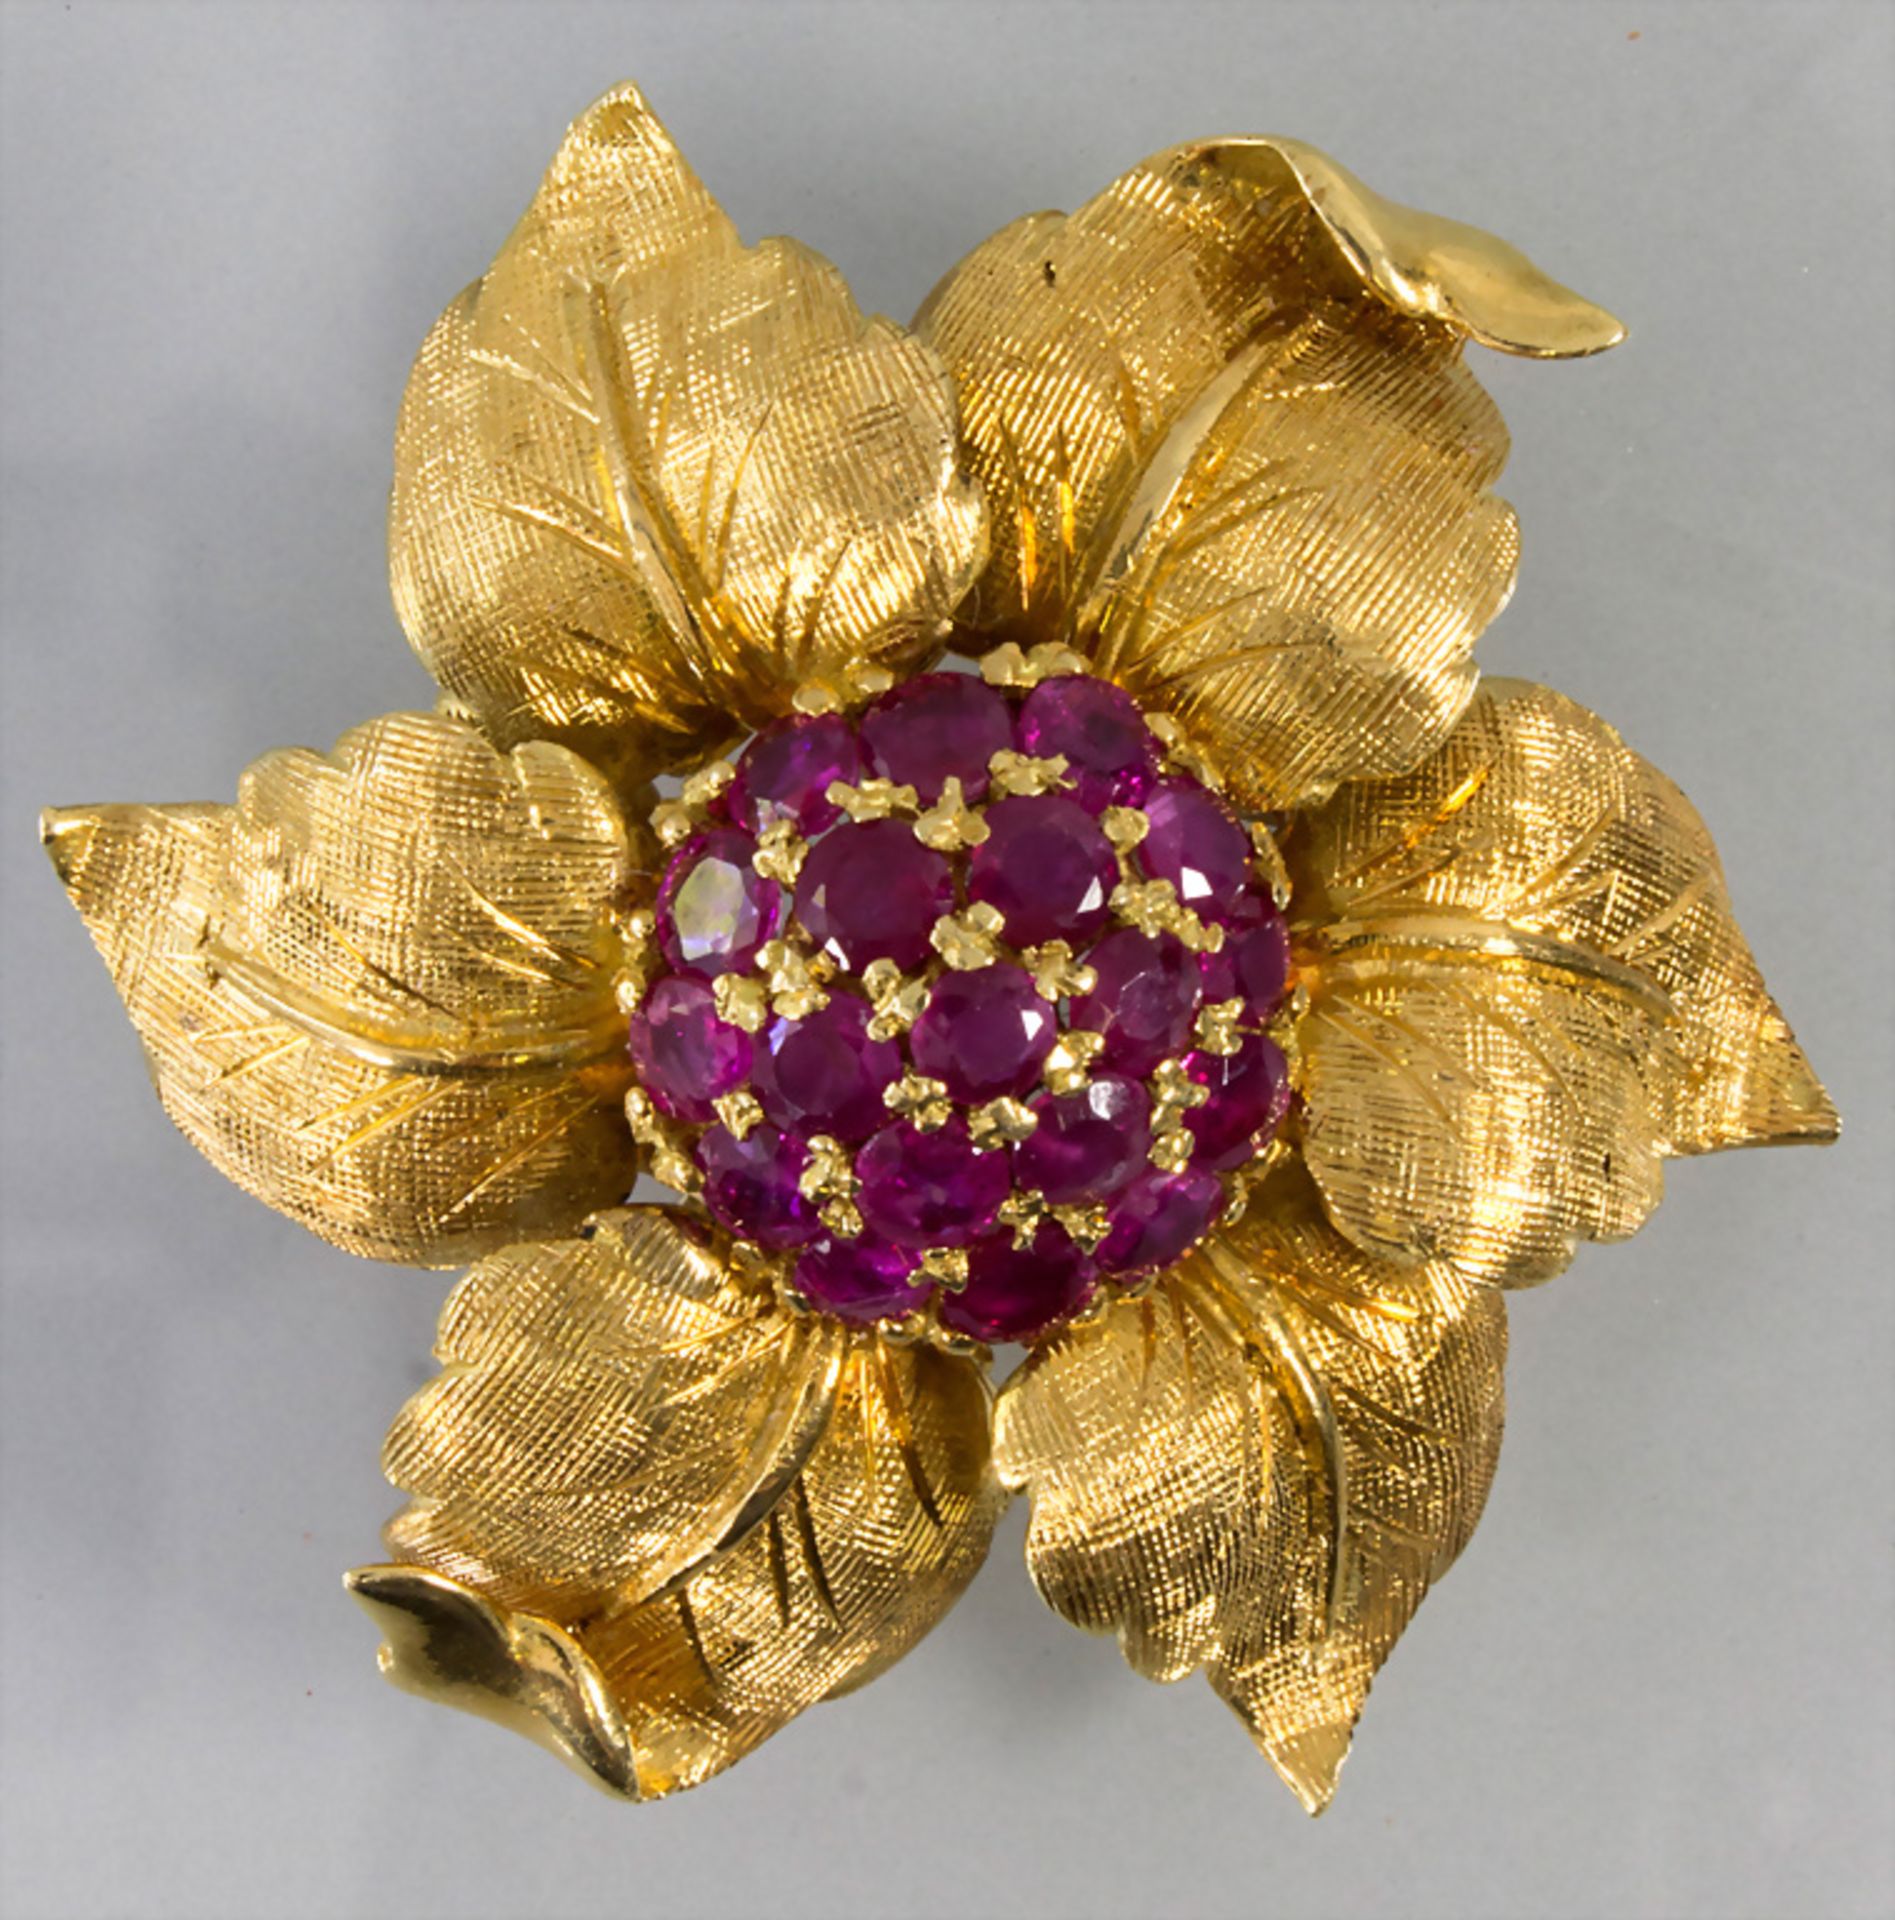 Goldbrosche mit Rubinen / An 18k gold brooch with rubies